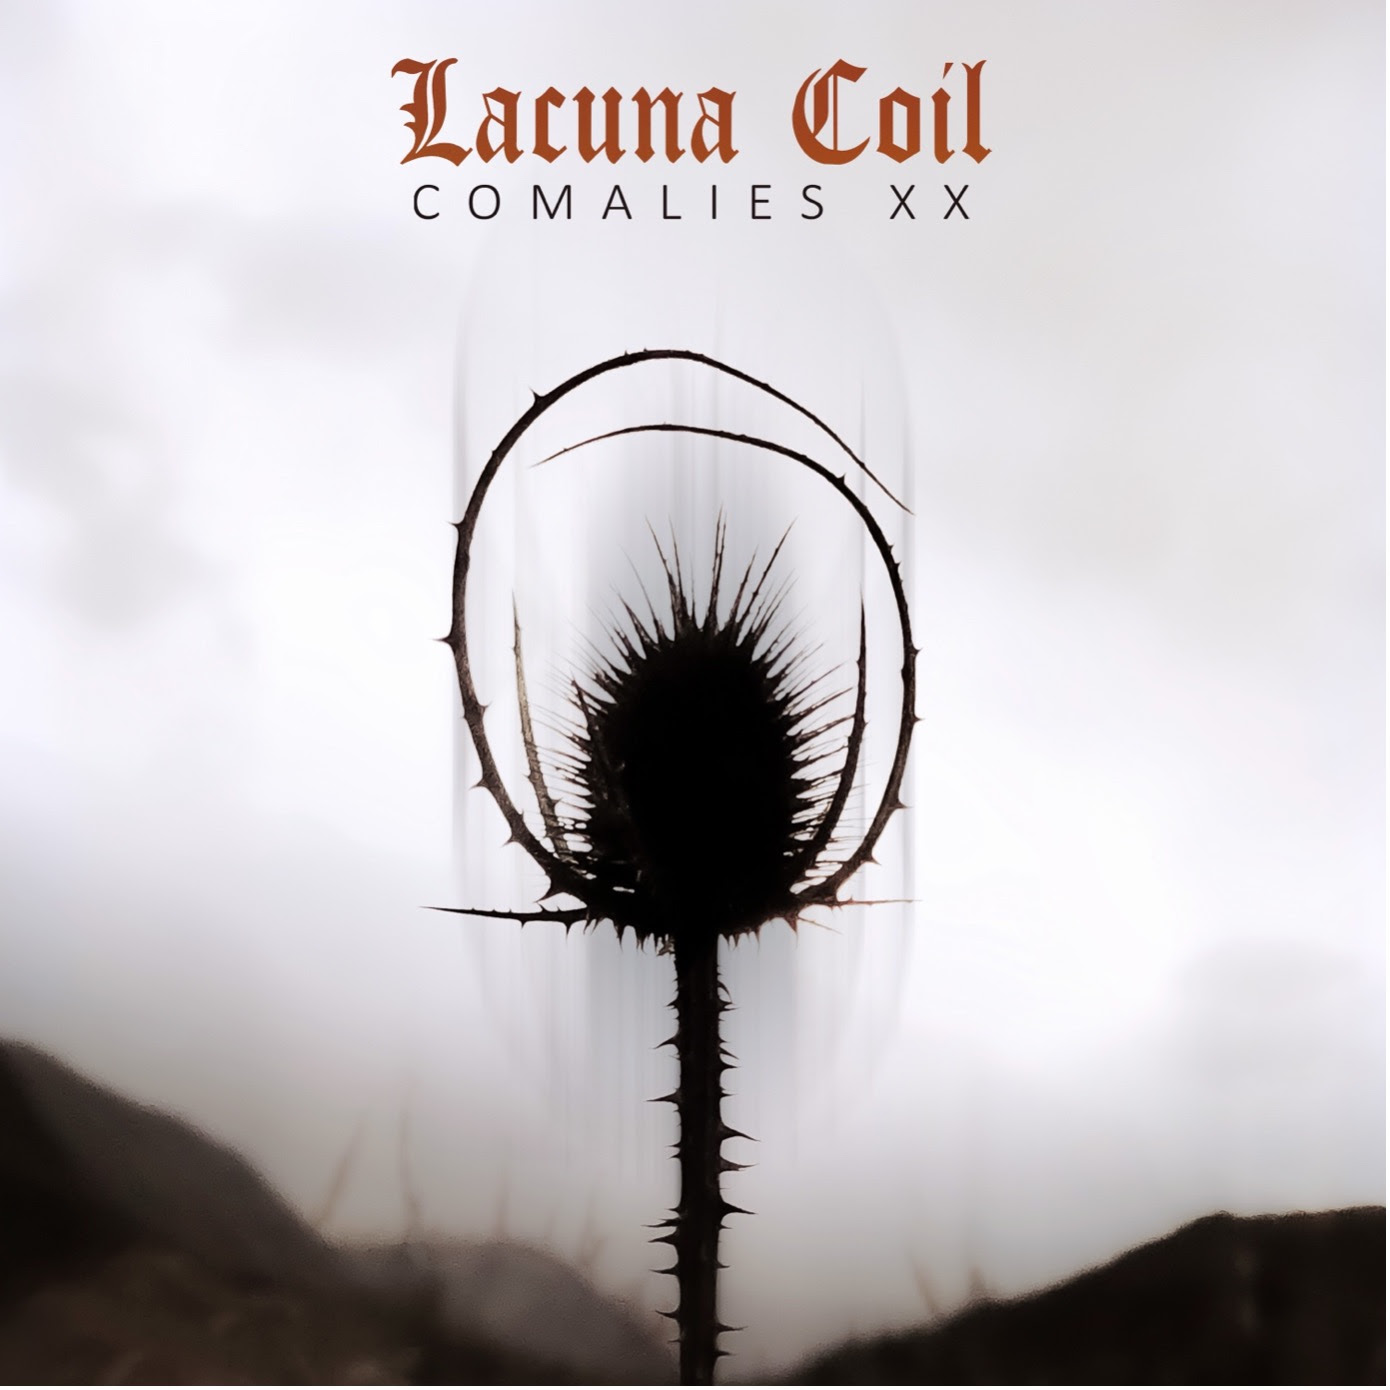 [Review] Nostalgia, Comida China y Guturales con el nuevo disco de Lacuna Coil